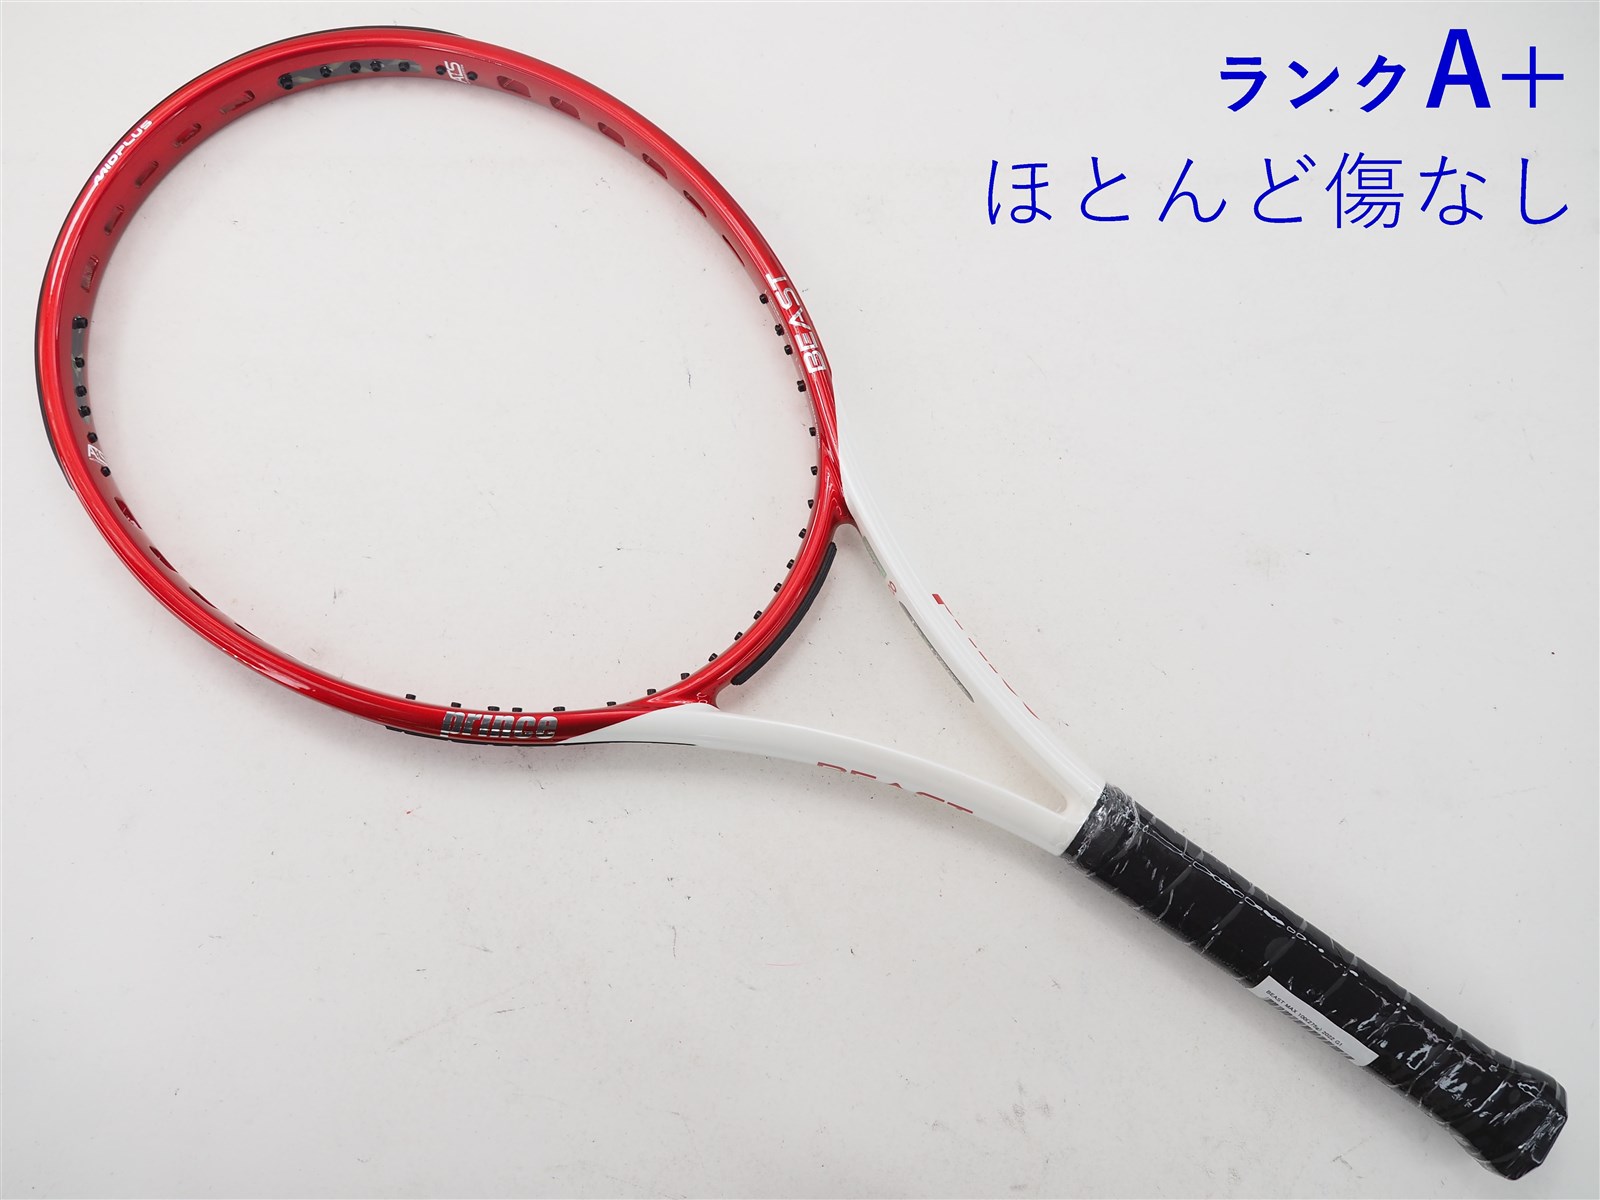 テニスラケット プリンス ビースト マックス 100(275g) 2022年モデル